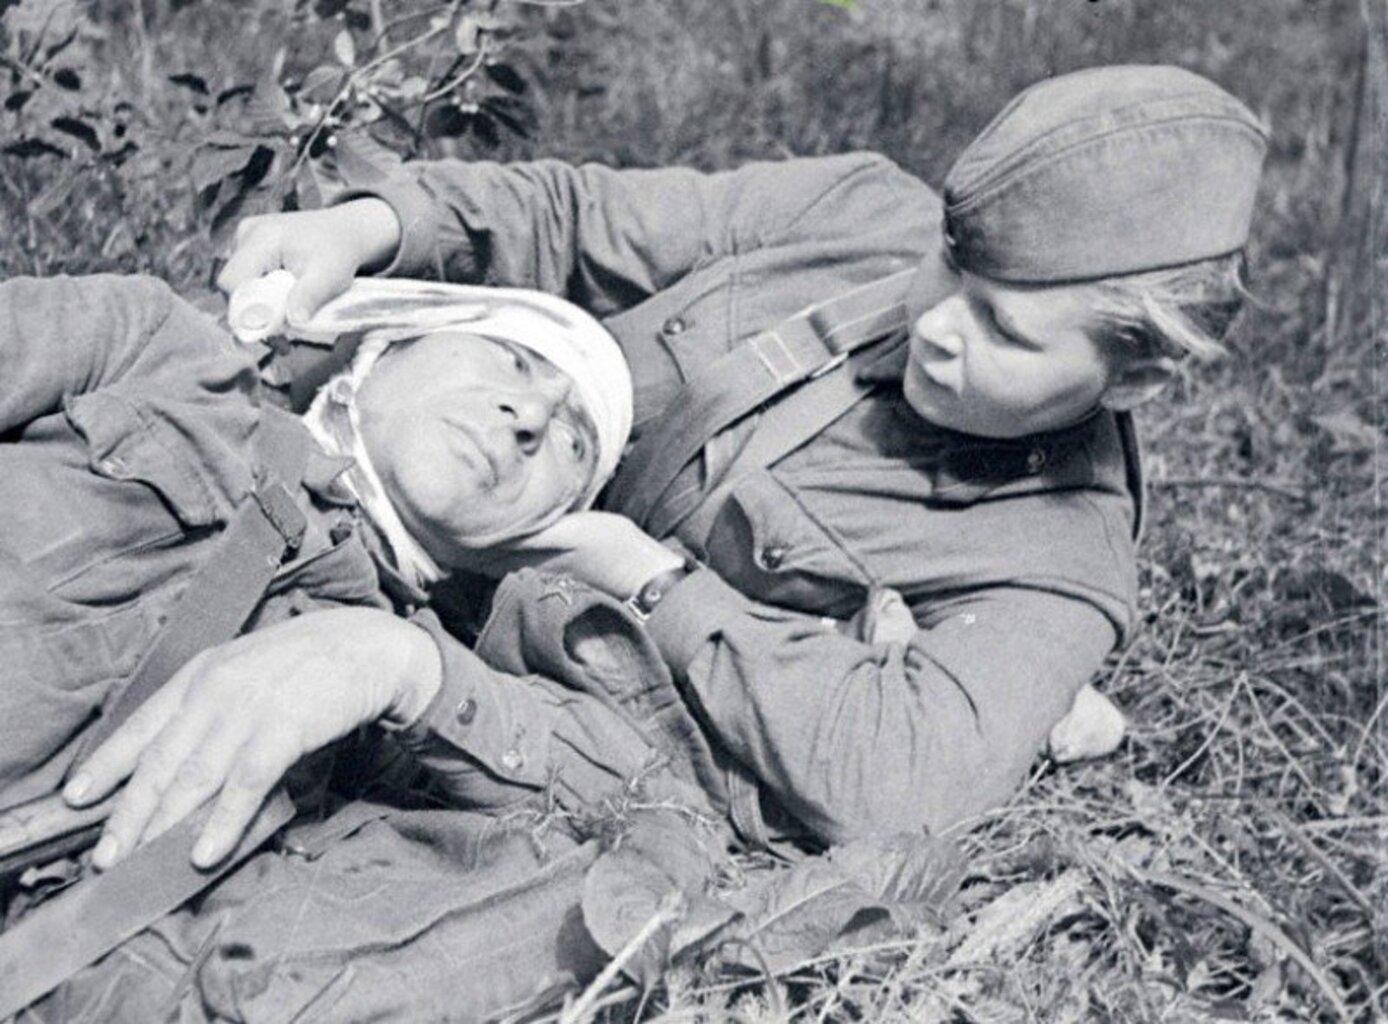 Сандружинница С.Г.Скотинкина перевязывает раненого бойца, Северо-Западный фронт, 1942 год